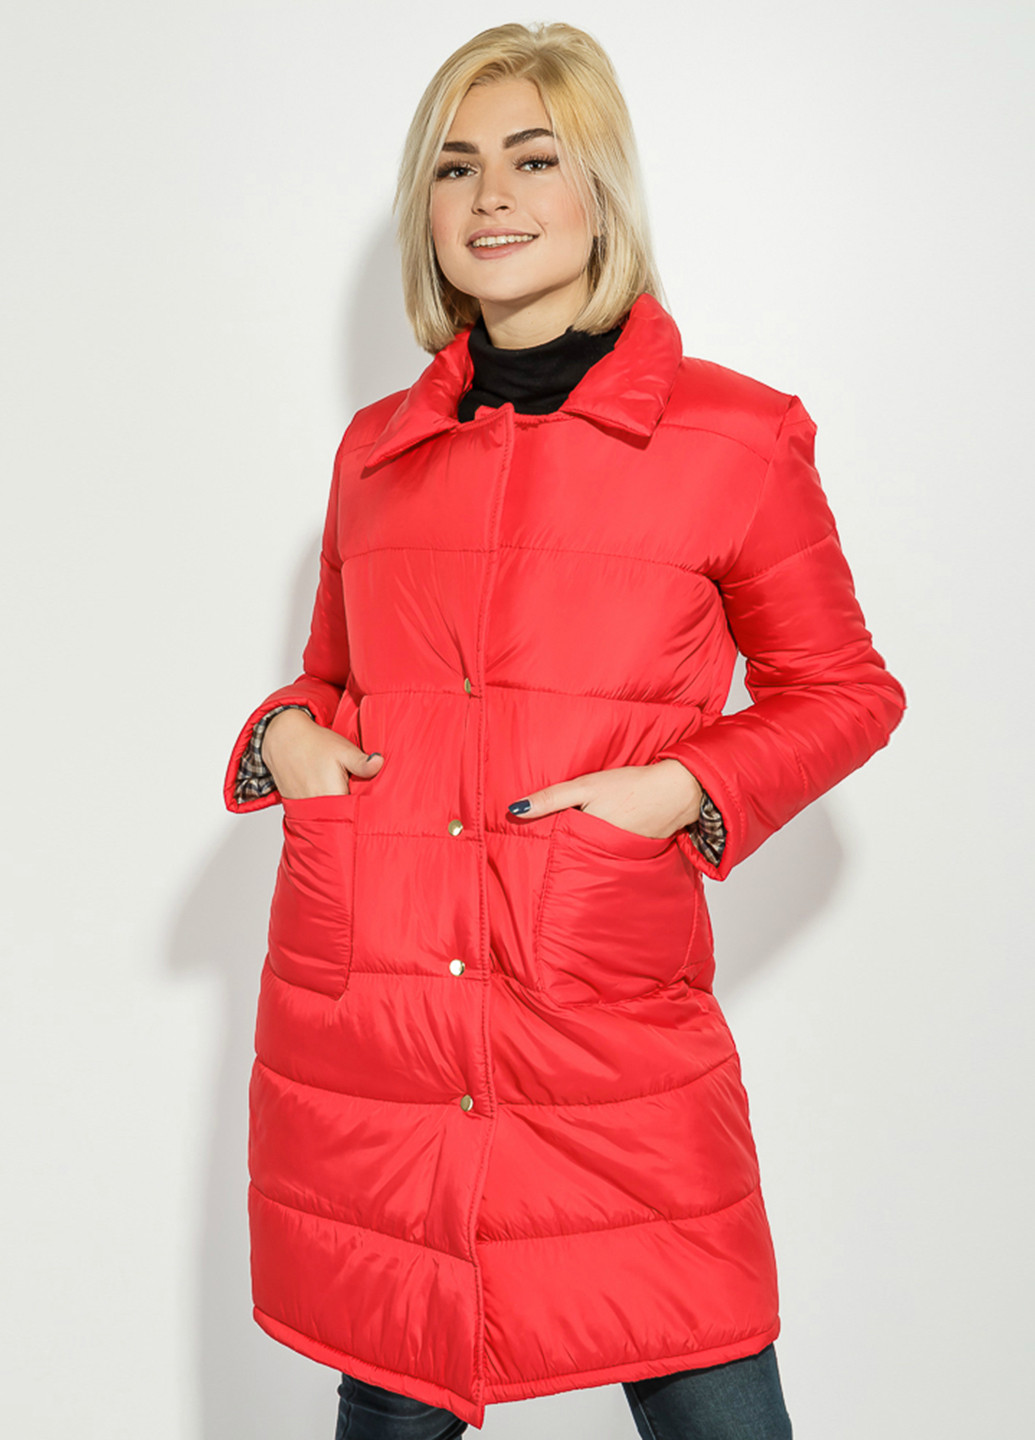 Красная зимняя куртка Time of Style